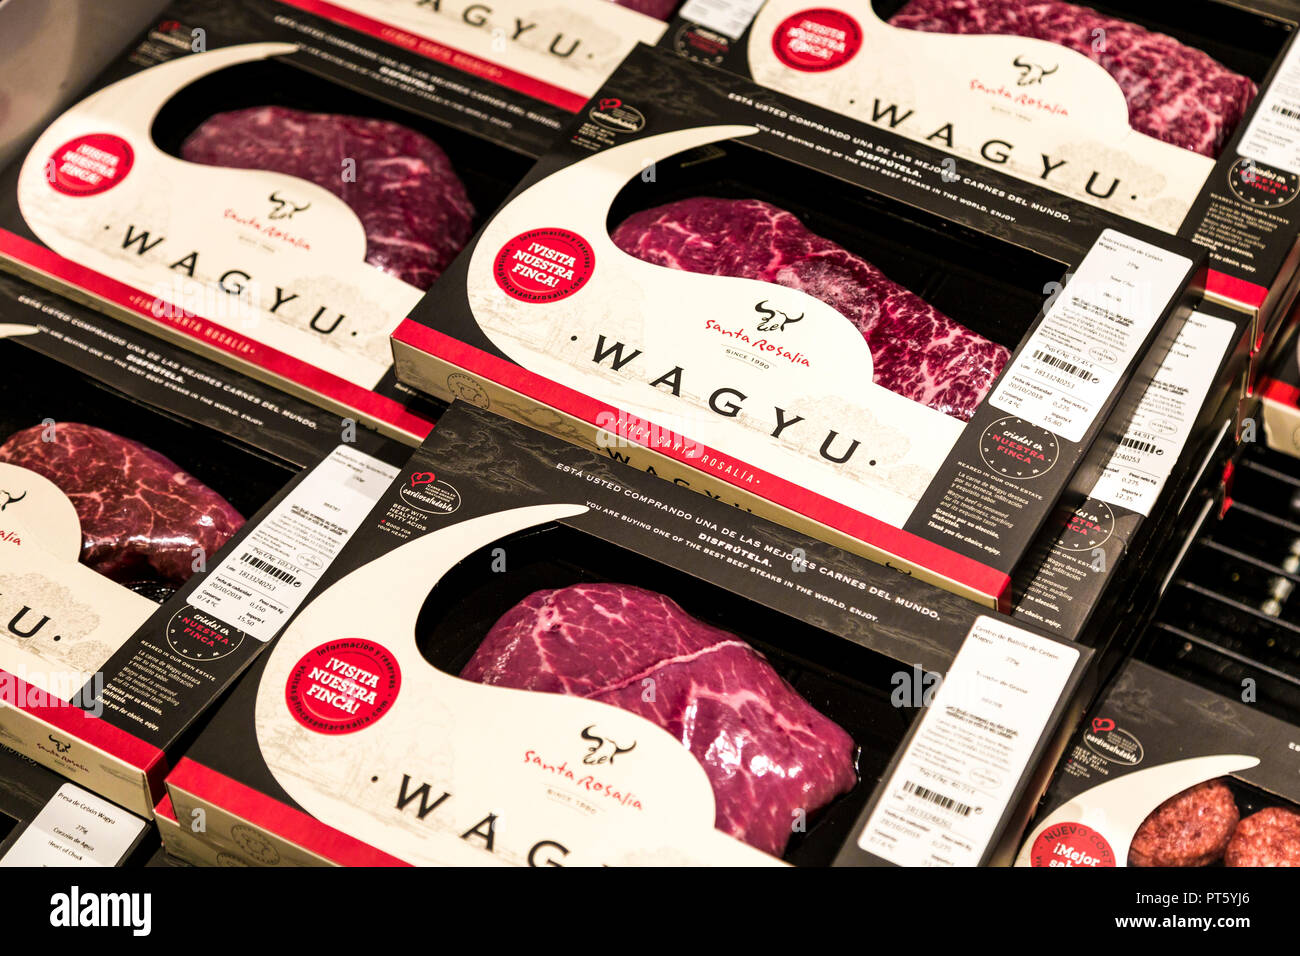 Steaks de boeuf wagyu emballés dans un supermarché Banque D'Images